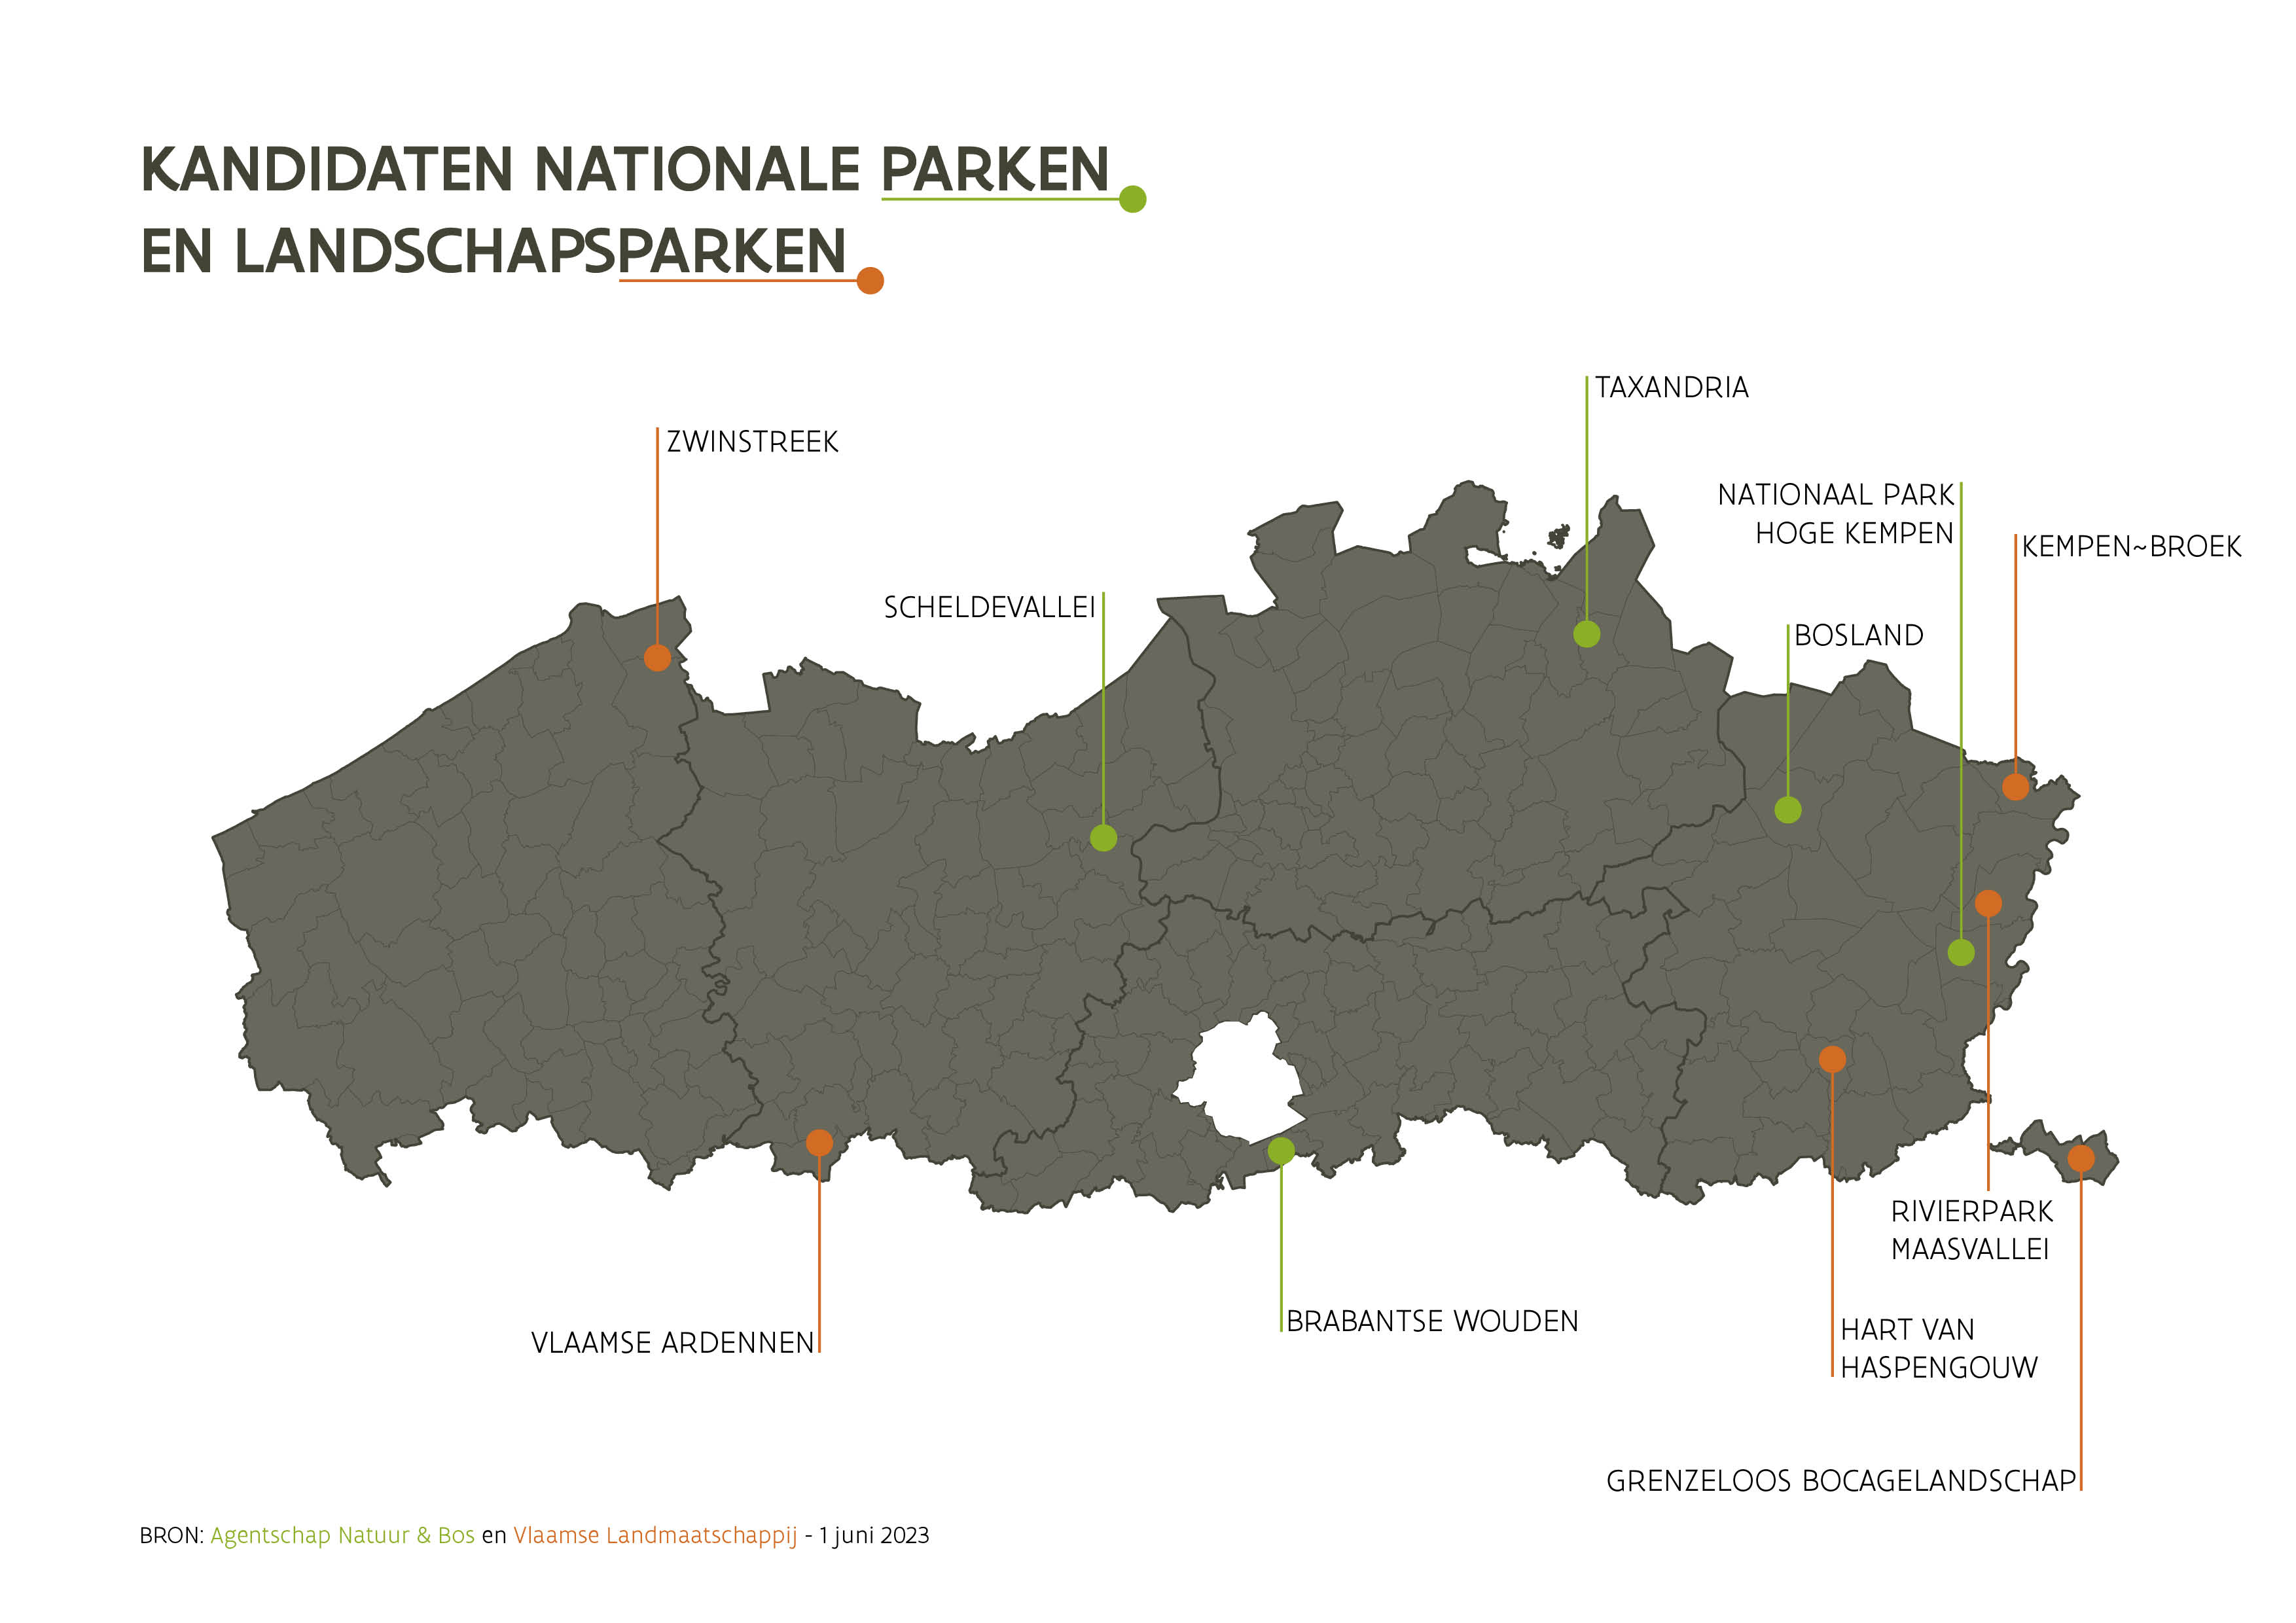 Kaart met overzicht kandidaten Vlaamse Parken